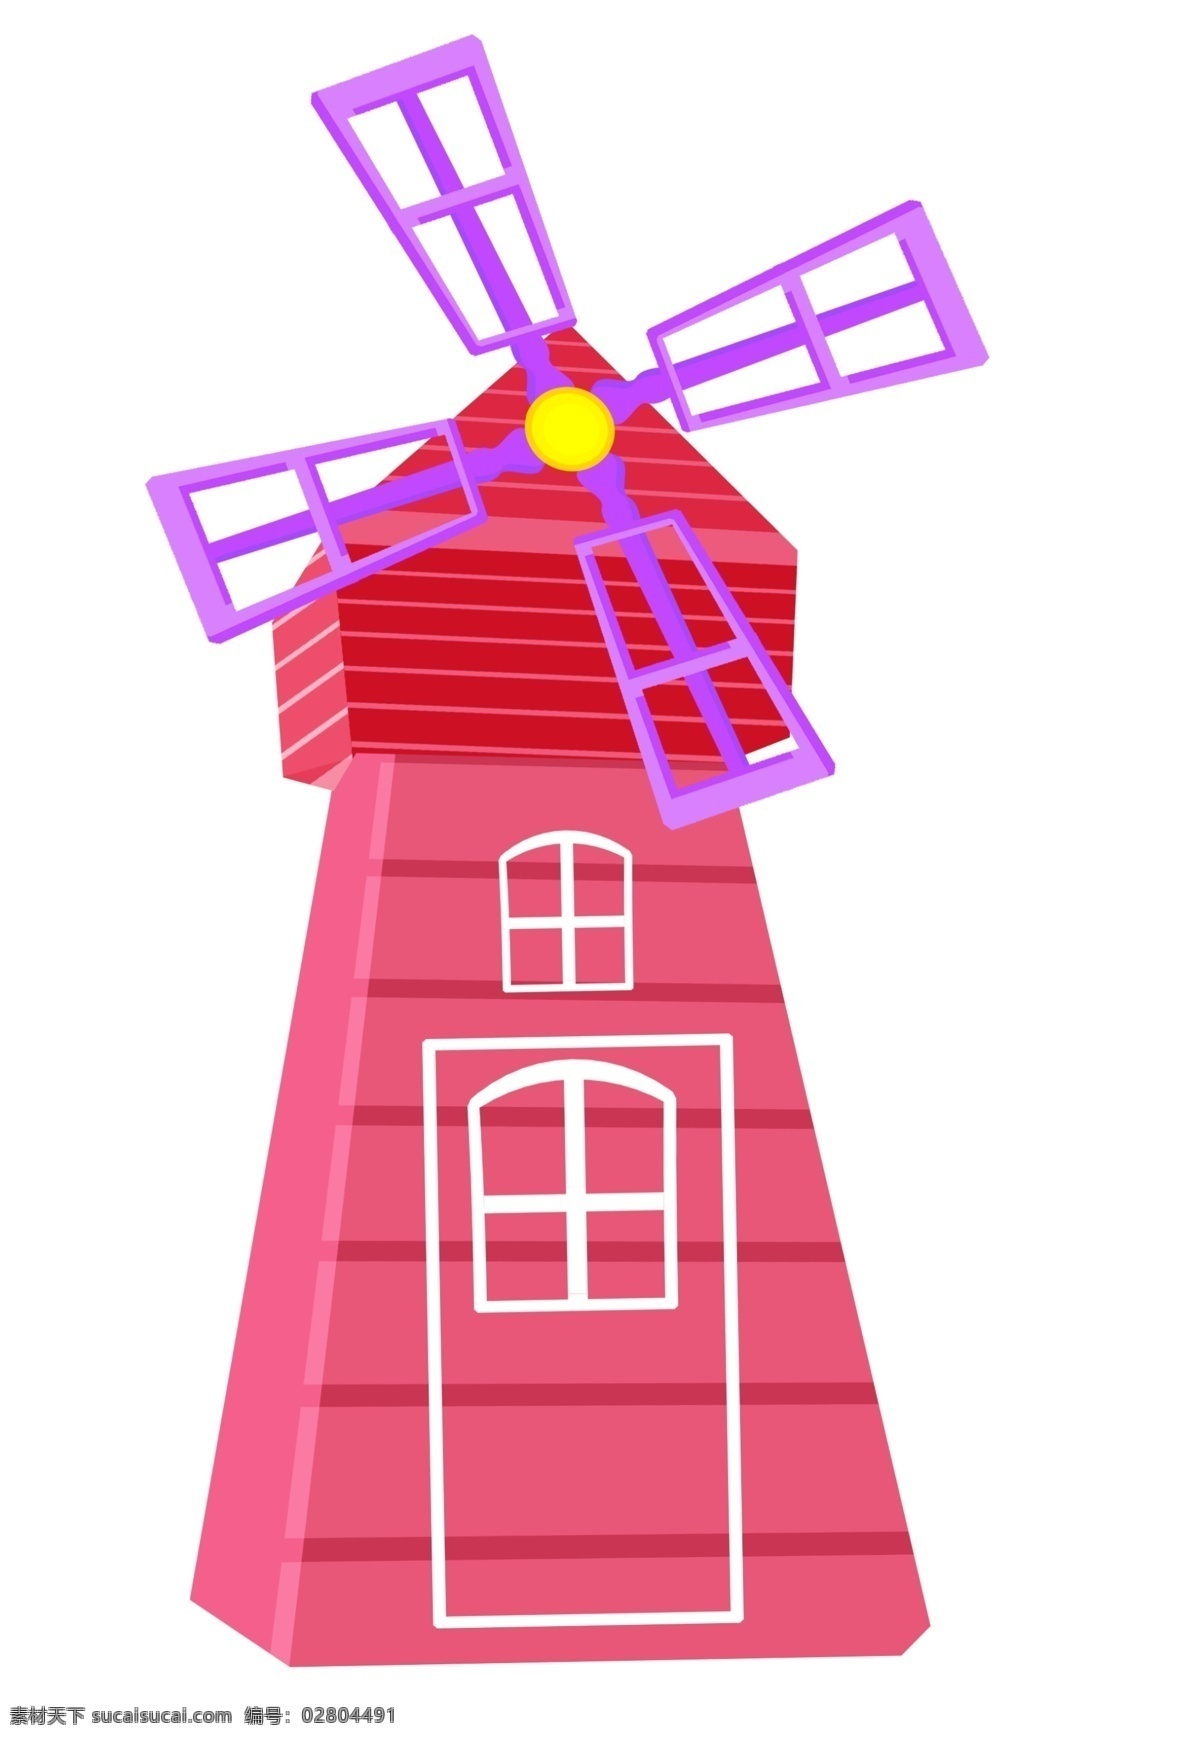 红色 风车 装饰 插画 立体风车 红色的风车 漂亮的风车 创意风车 精美风车 卡通风车 风车建筑